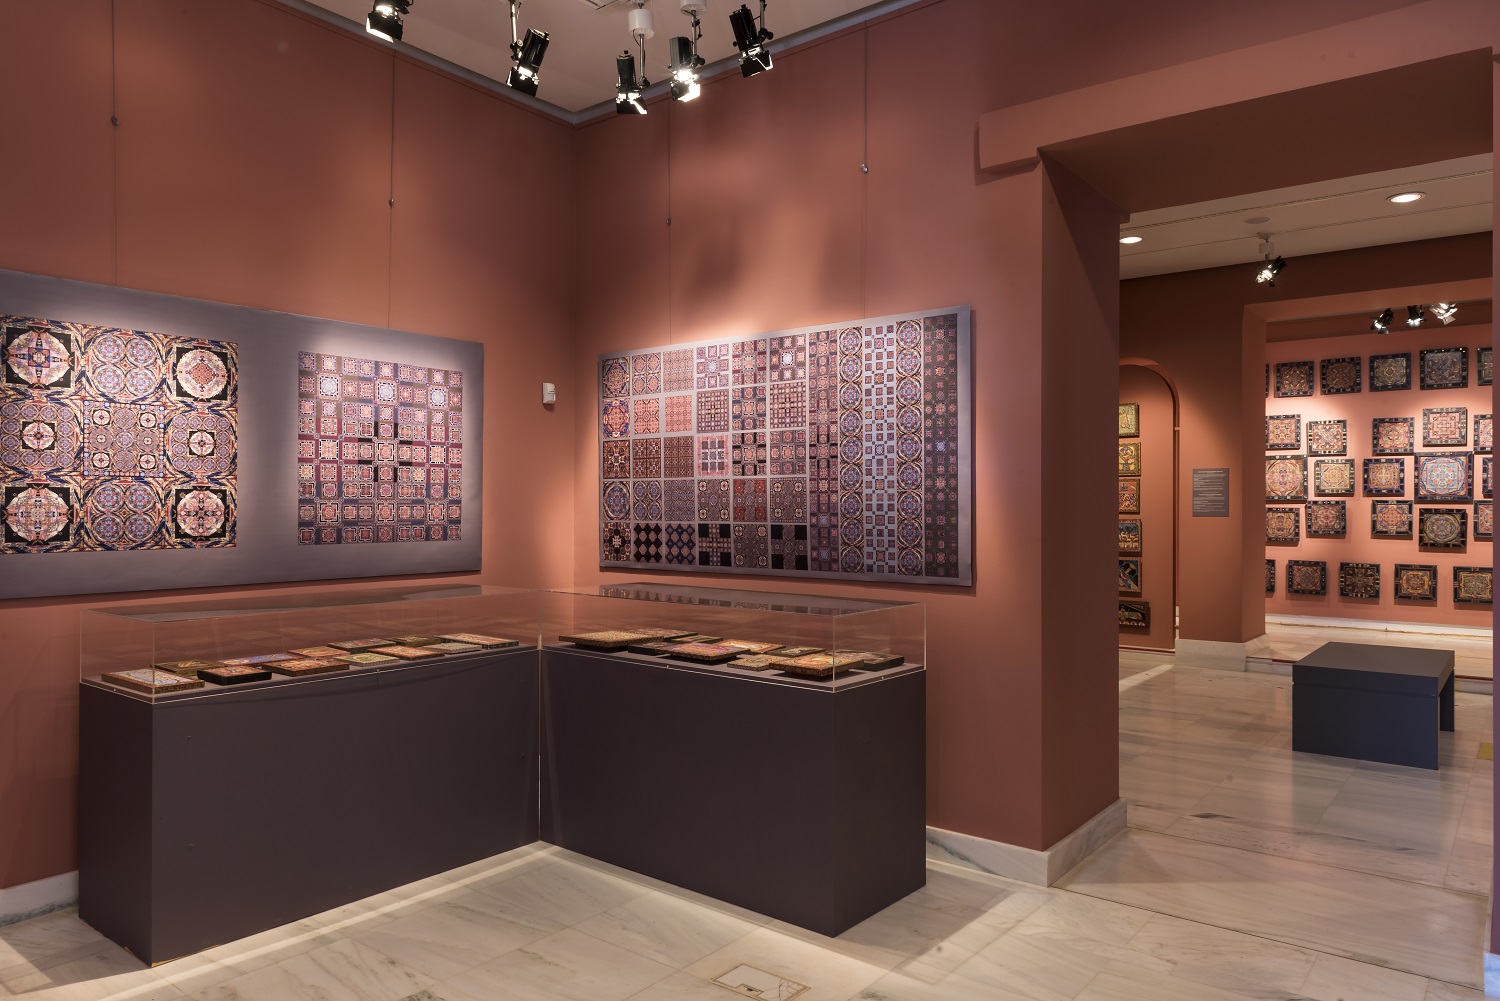 Βυζαντινές μεταγραφές. Κήποι όλο φως: Έκθεση της Μαρίας-Σμαράγδας Σκούρτα στο Βυζαντινό και Χριστιανικό Μουσείο